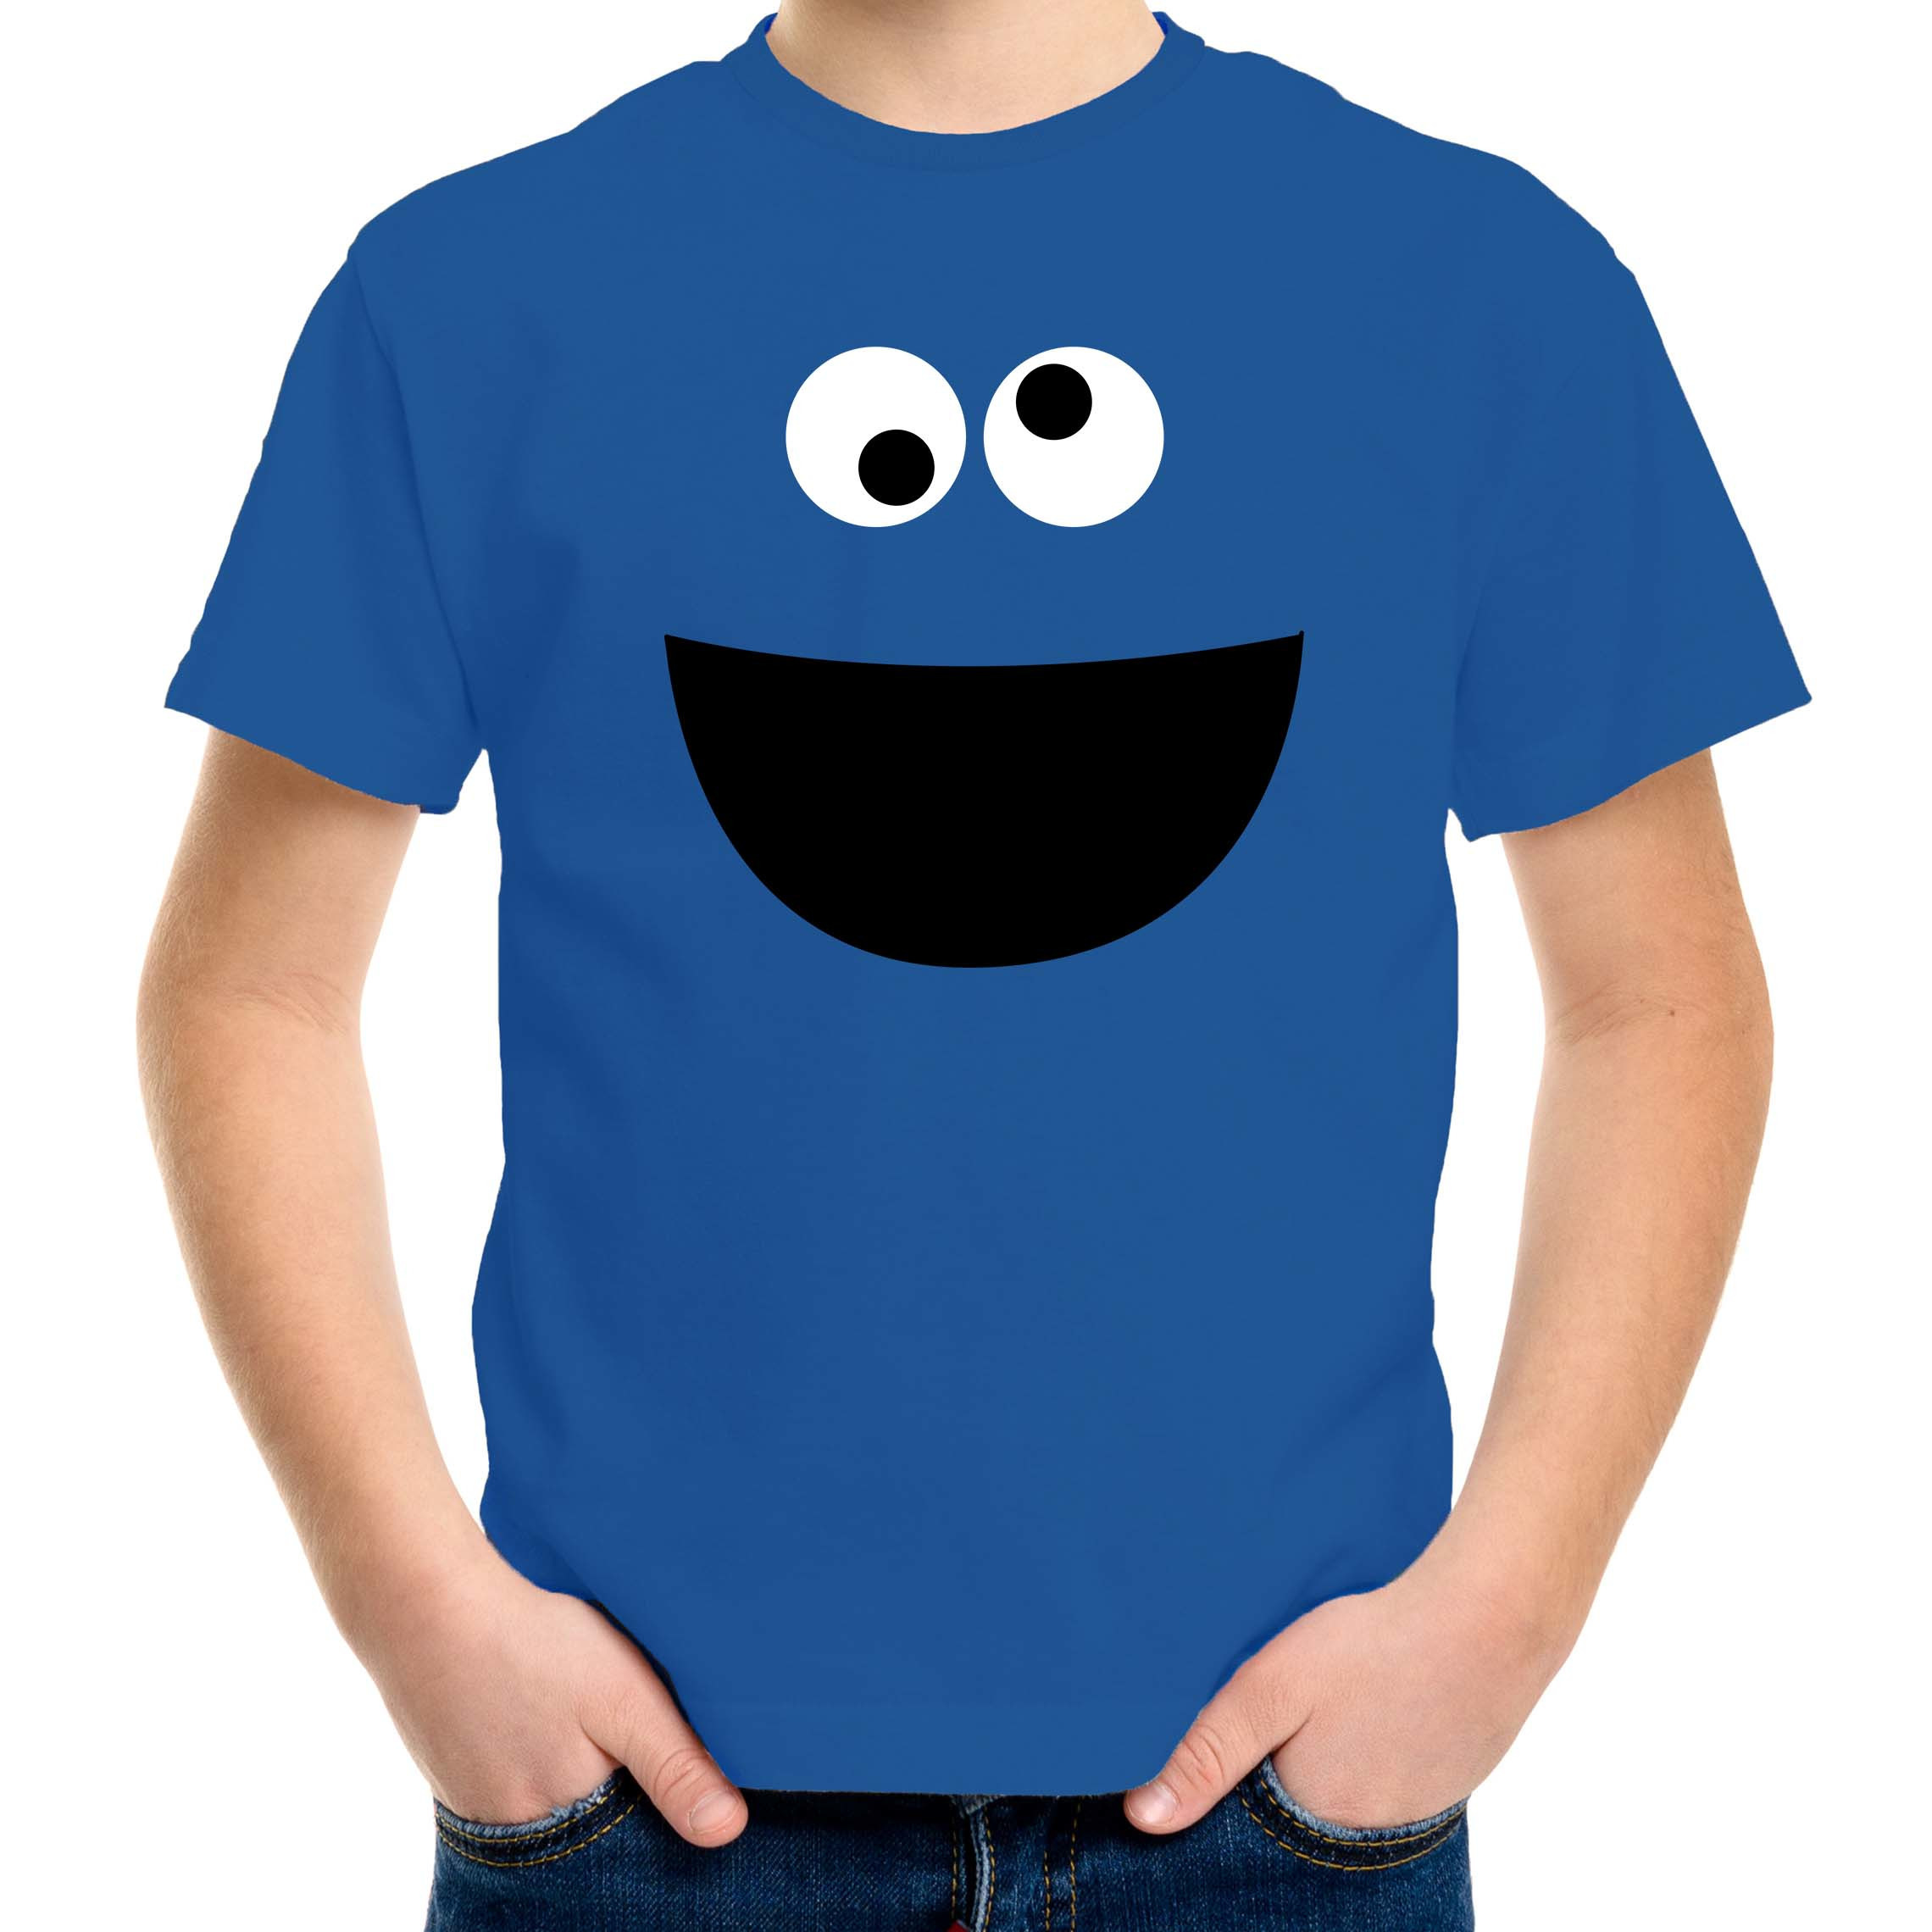 Verkleed-carnaval t-shirt blauw cartoon knuffel monster voor kinderen Verkleed-kostuum shirts